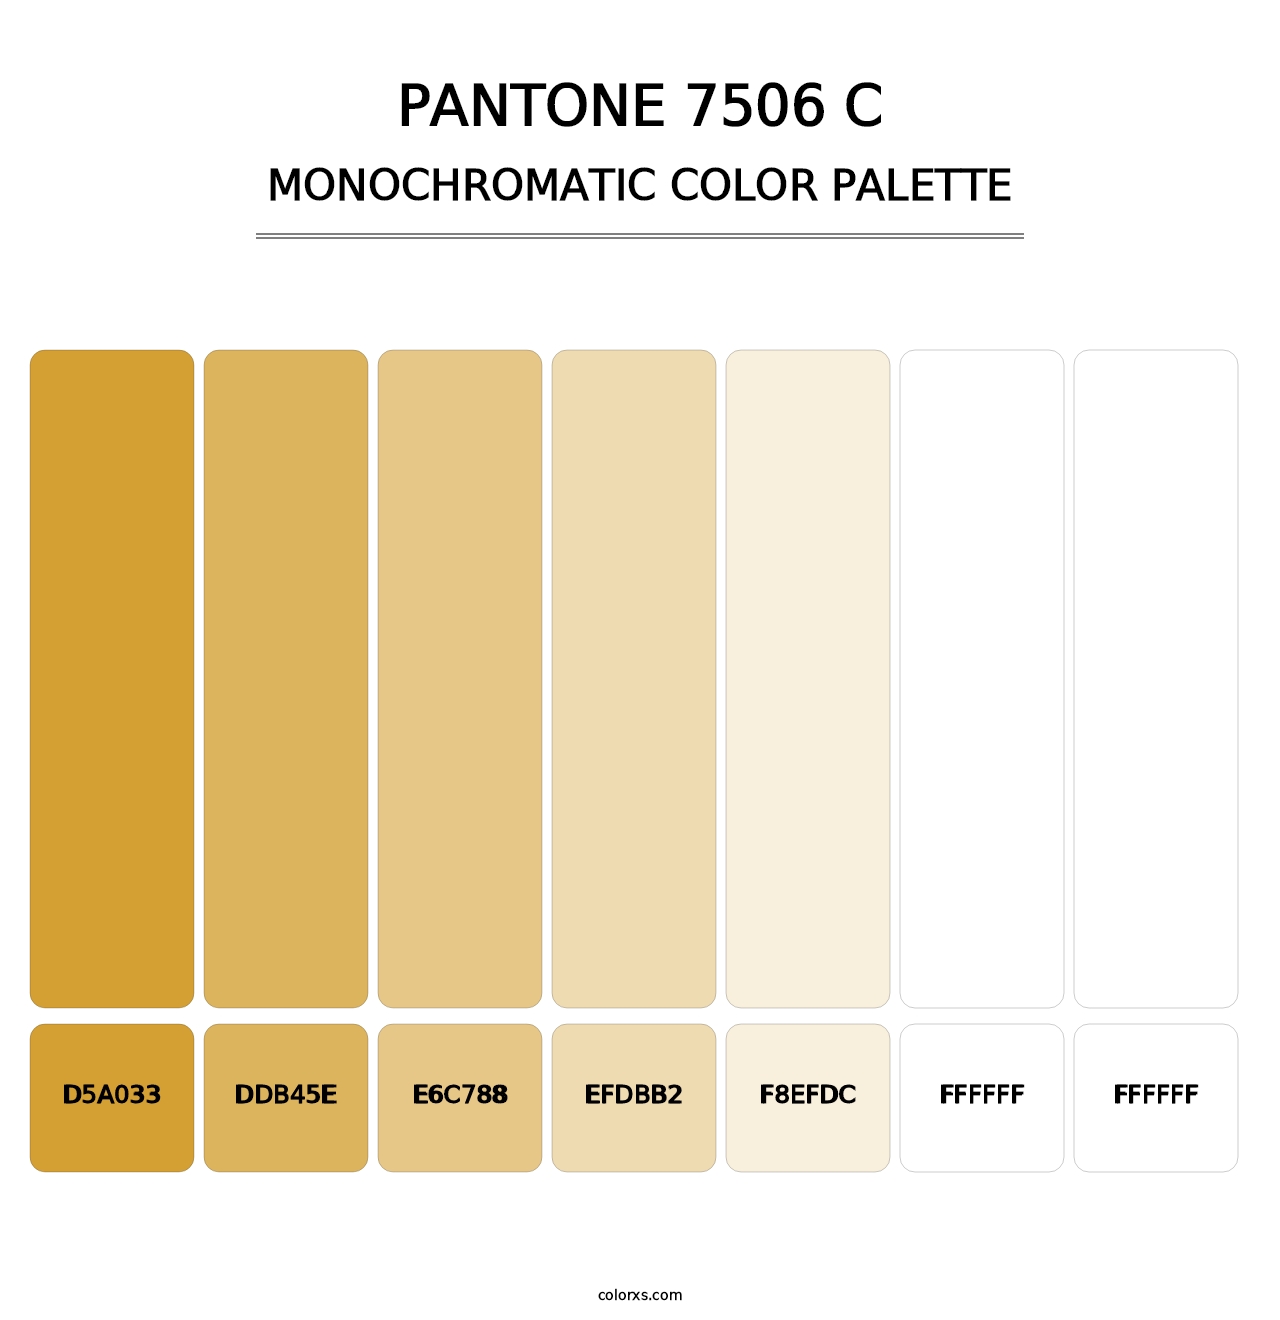 PANTONE 7506 C - Monochromatic Color Palette